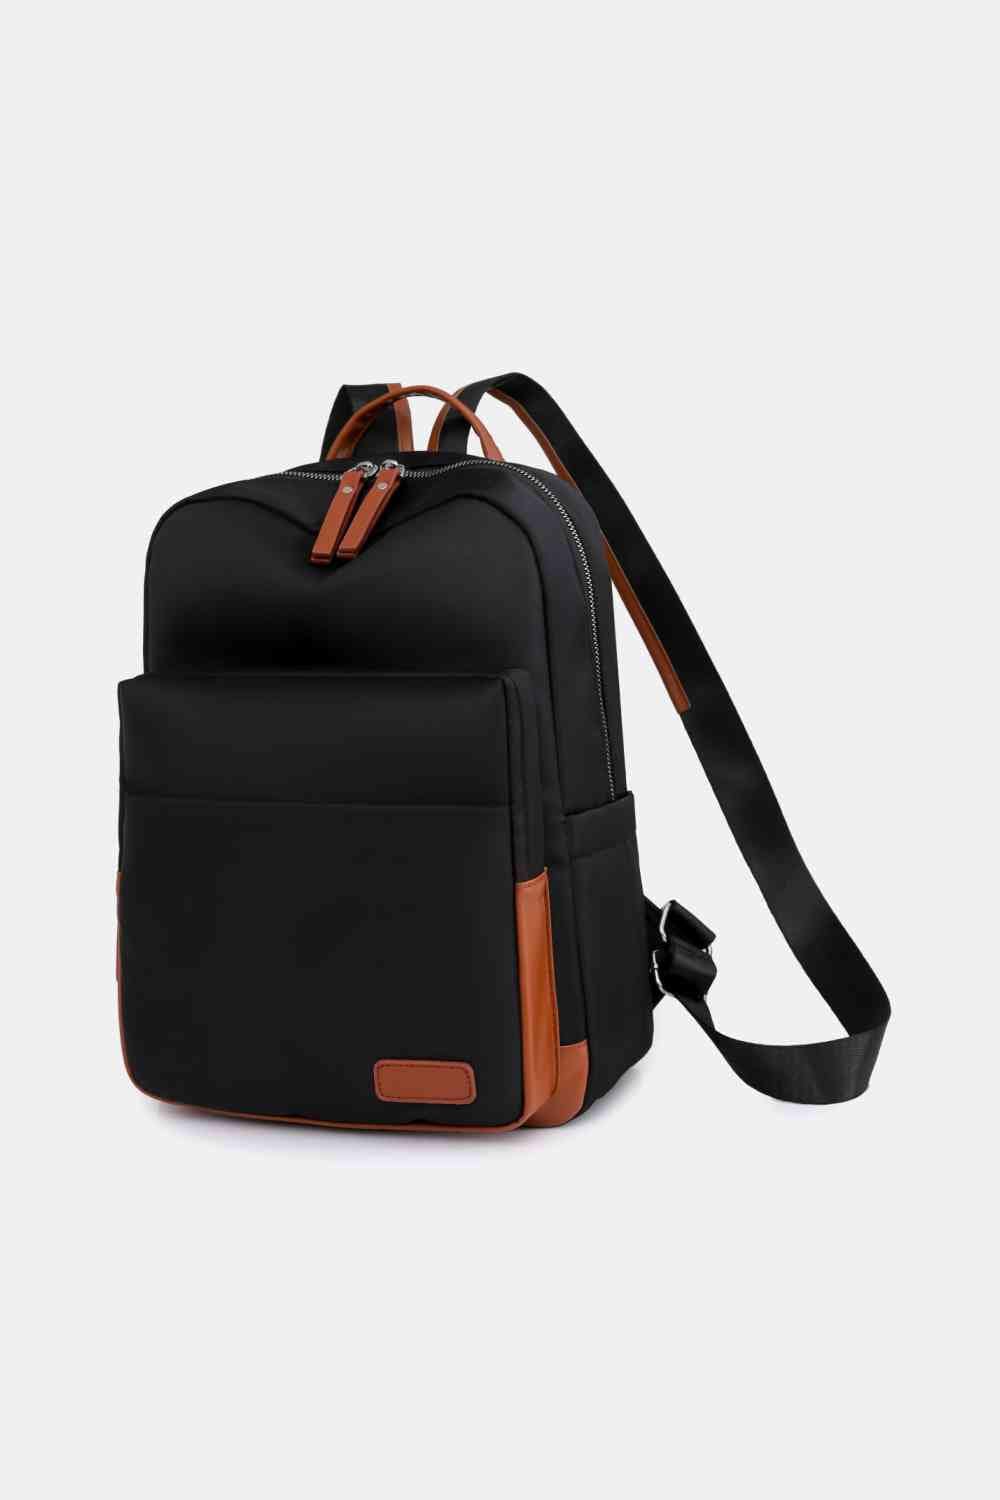 Medium Nylon Backpack Black / One Size